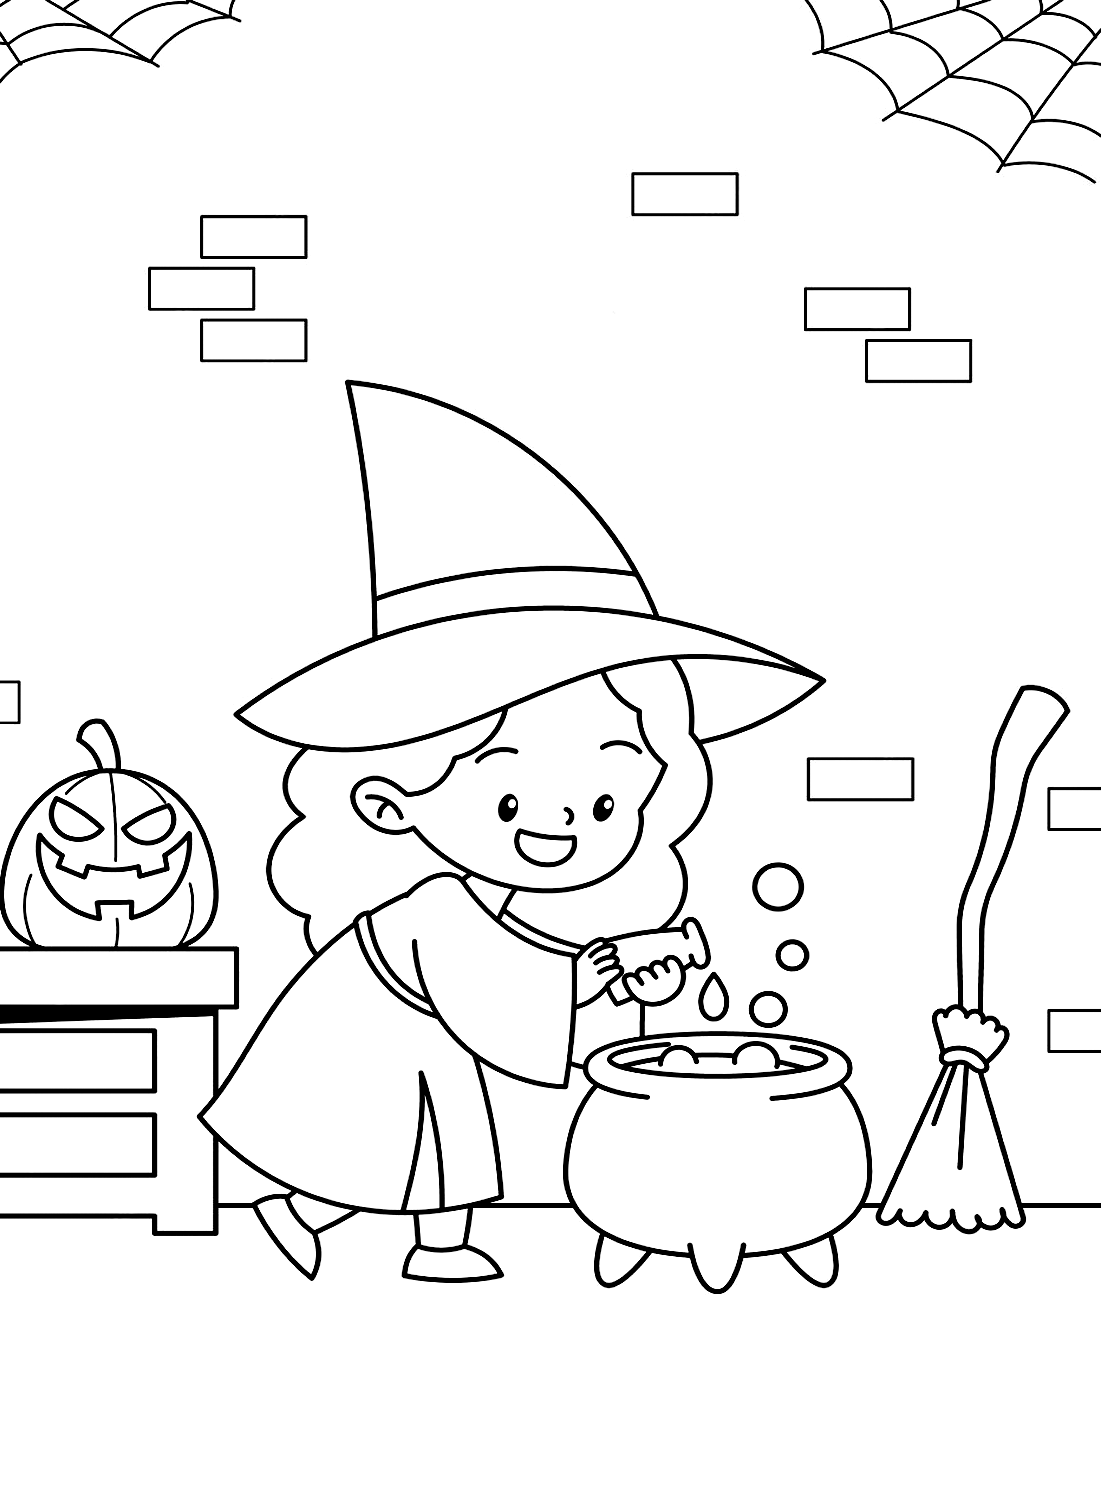 Uma bruxinha está cozinhando para imprimir do Cute Halloween